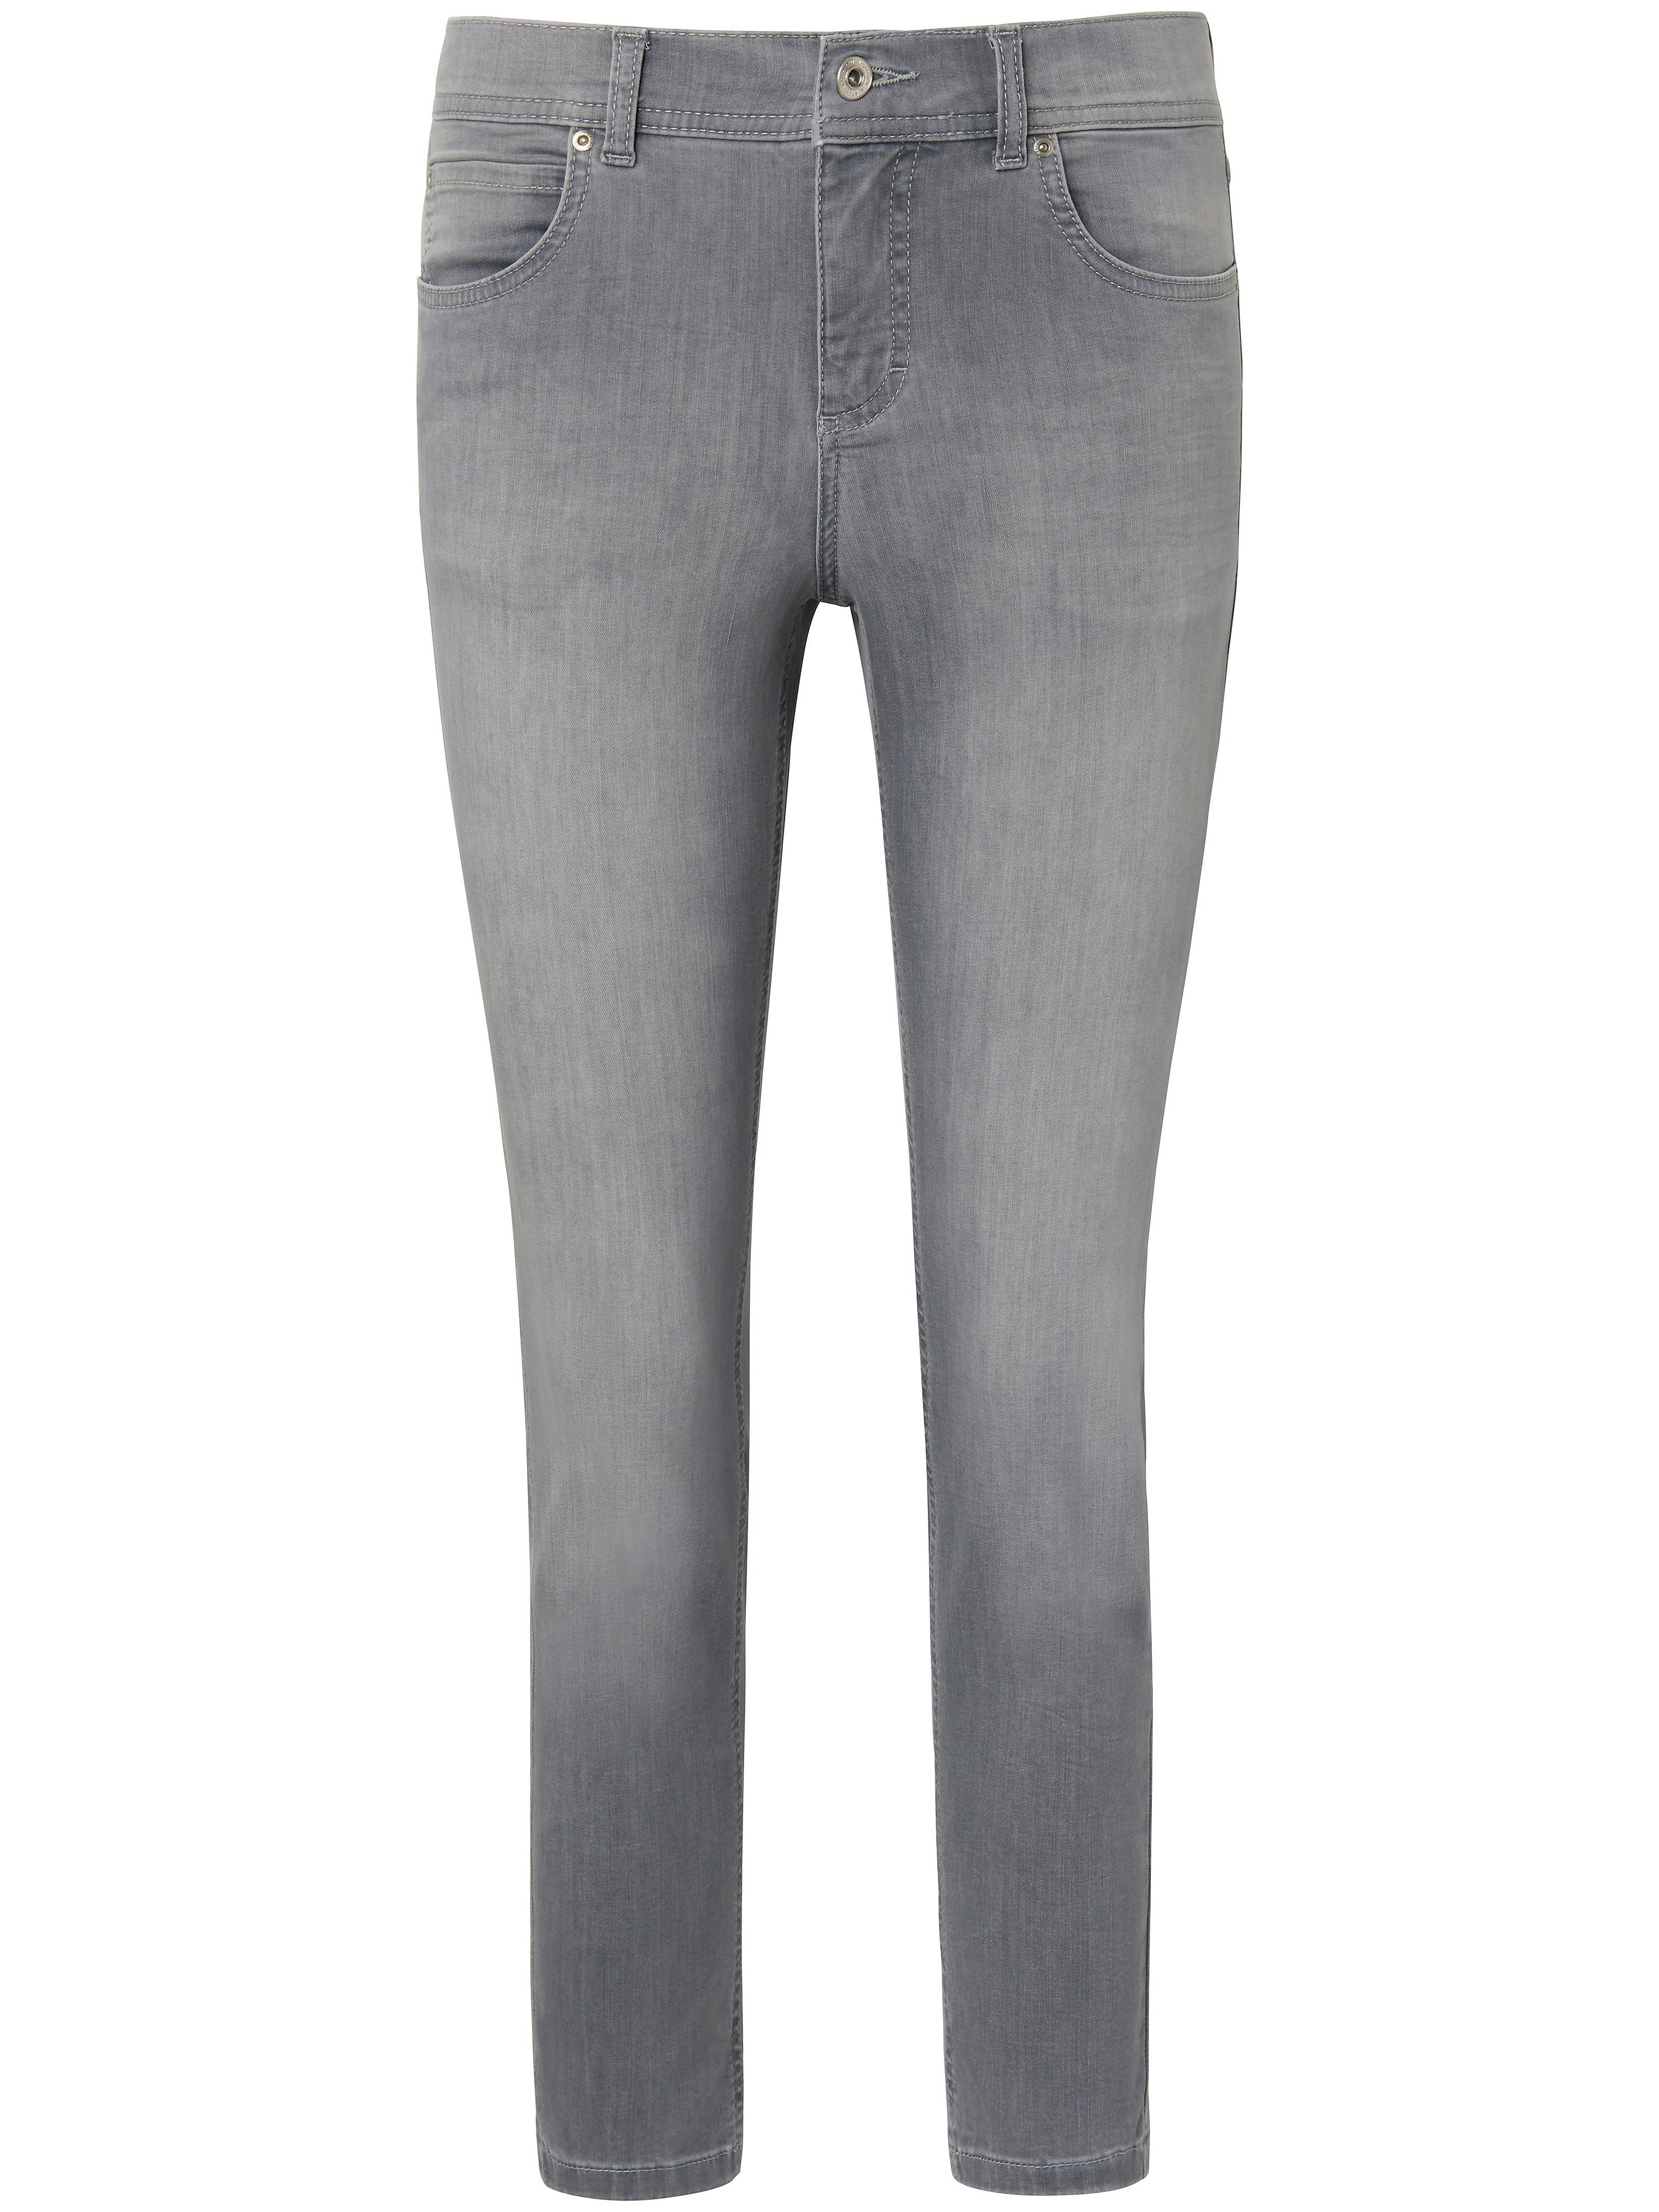 Le jean modèle Ornella  ANGELS gris taille 40